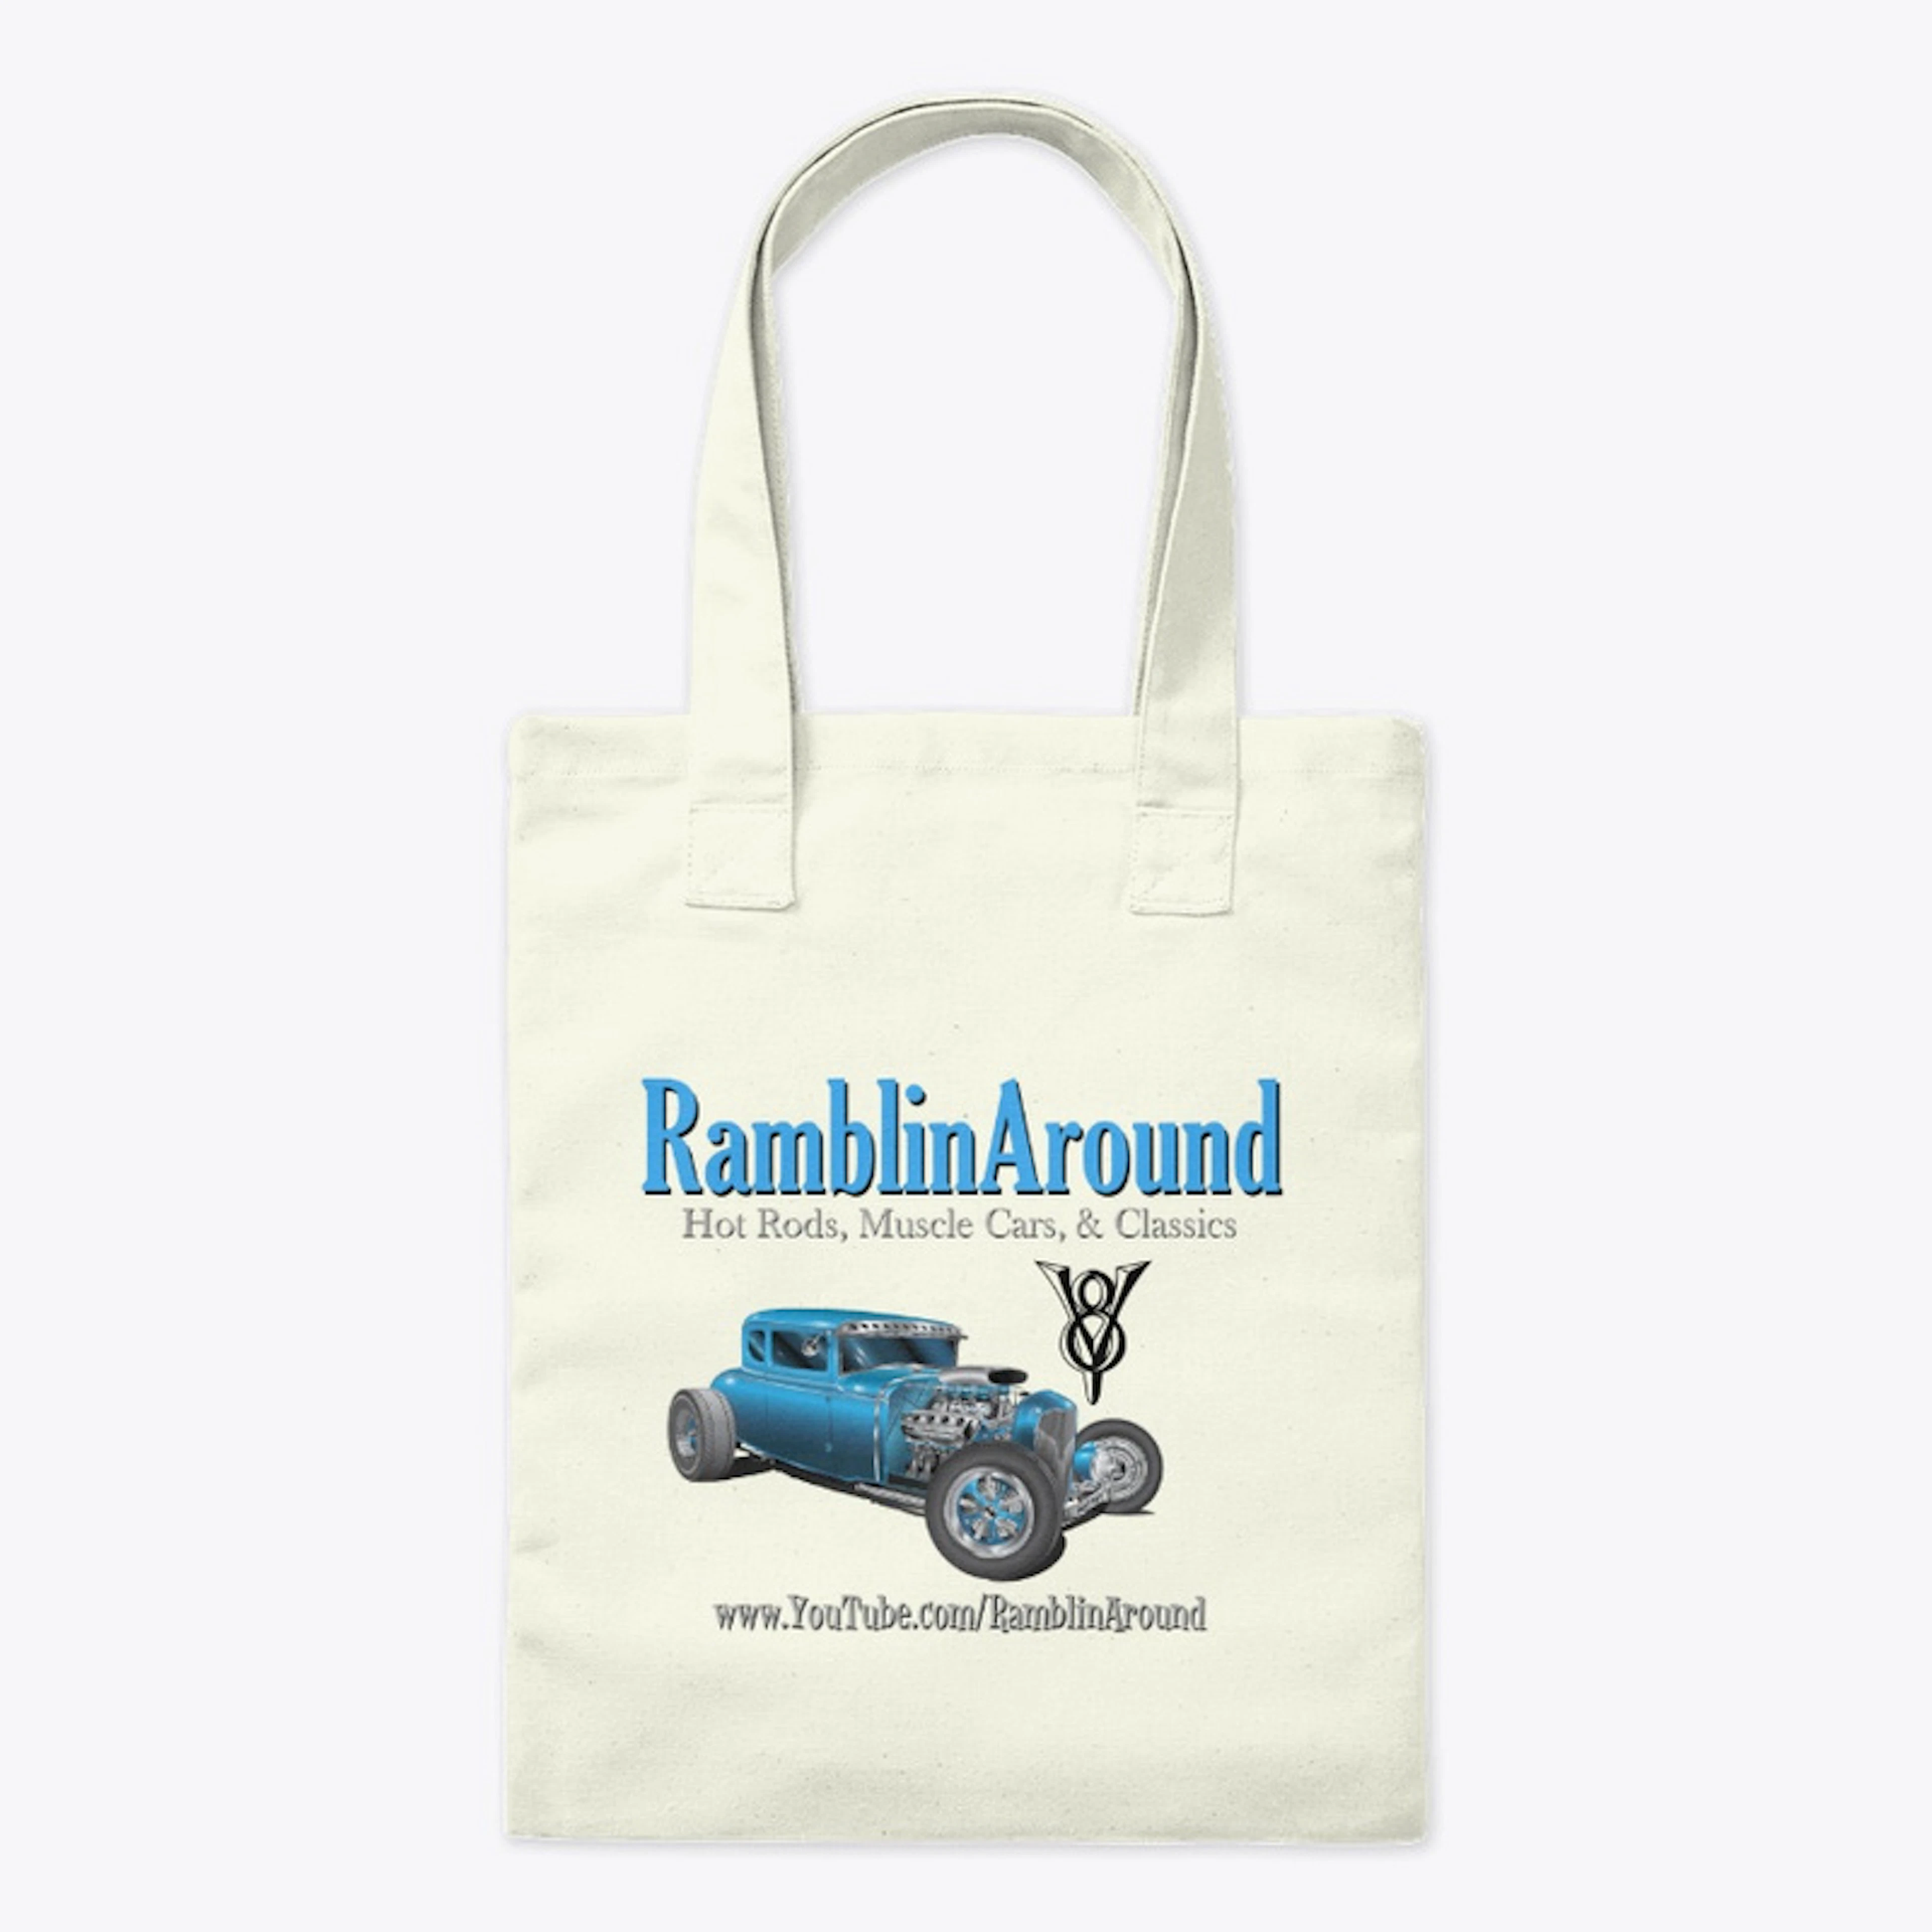 RamblinAround Classic Cars